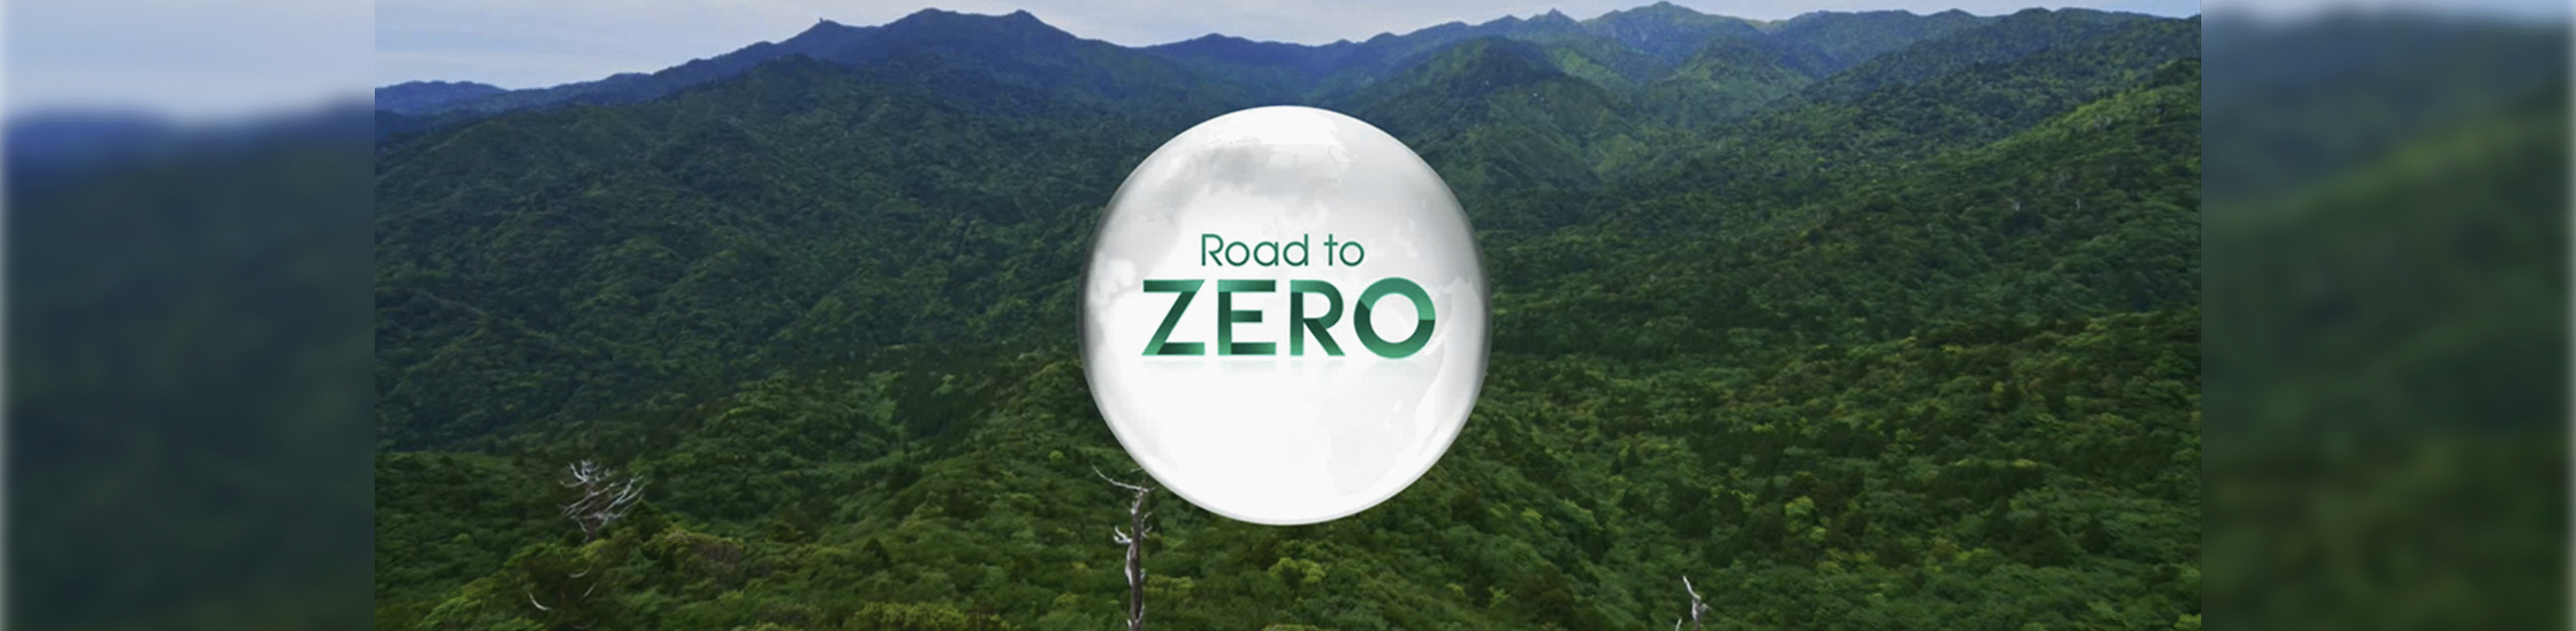 Road to Zero 節能標誌